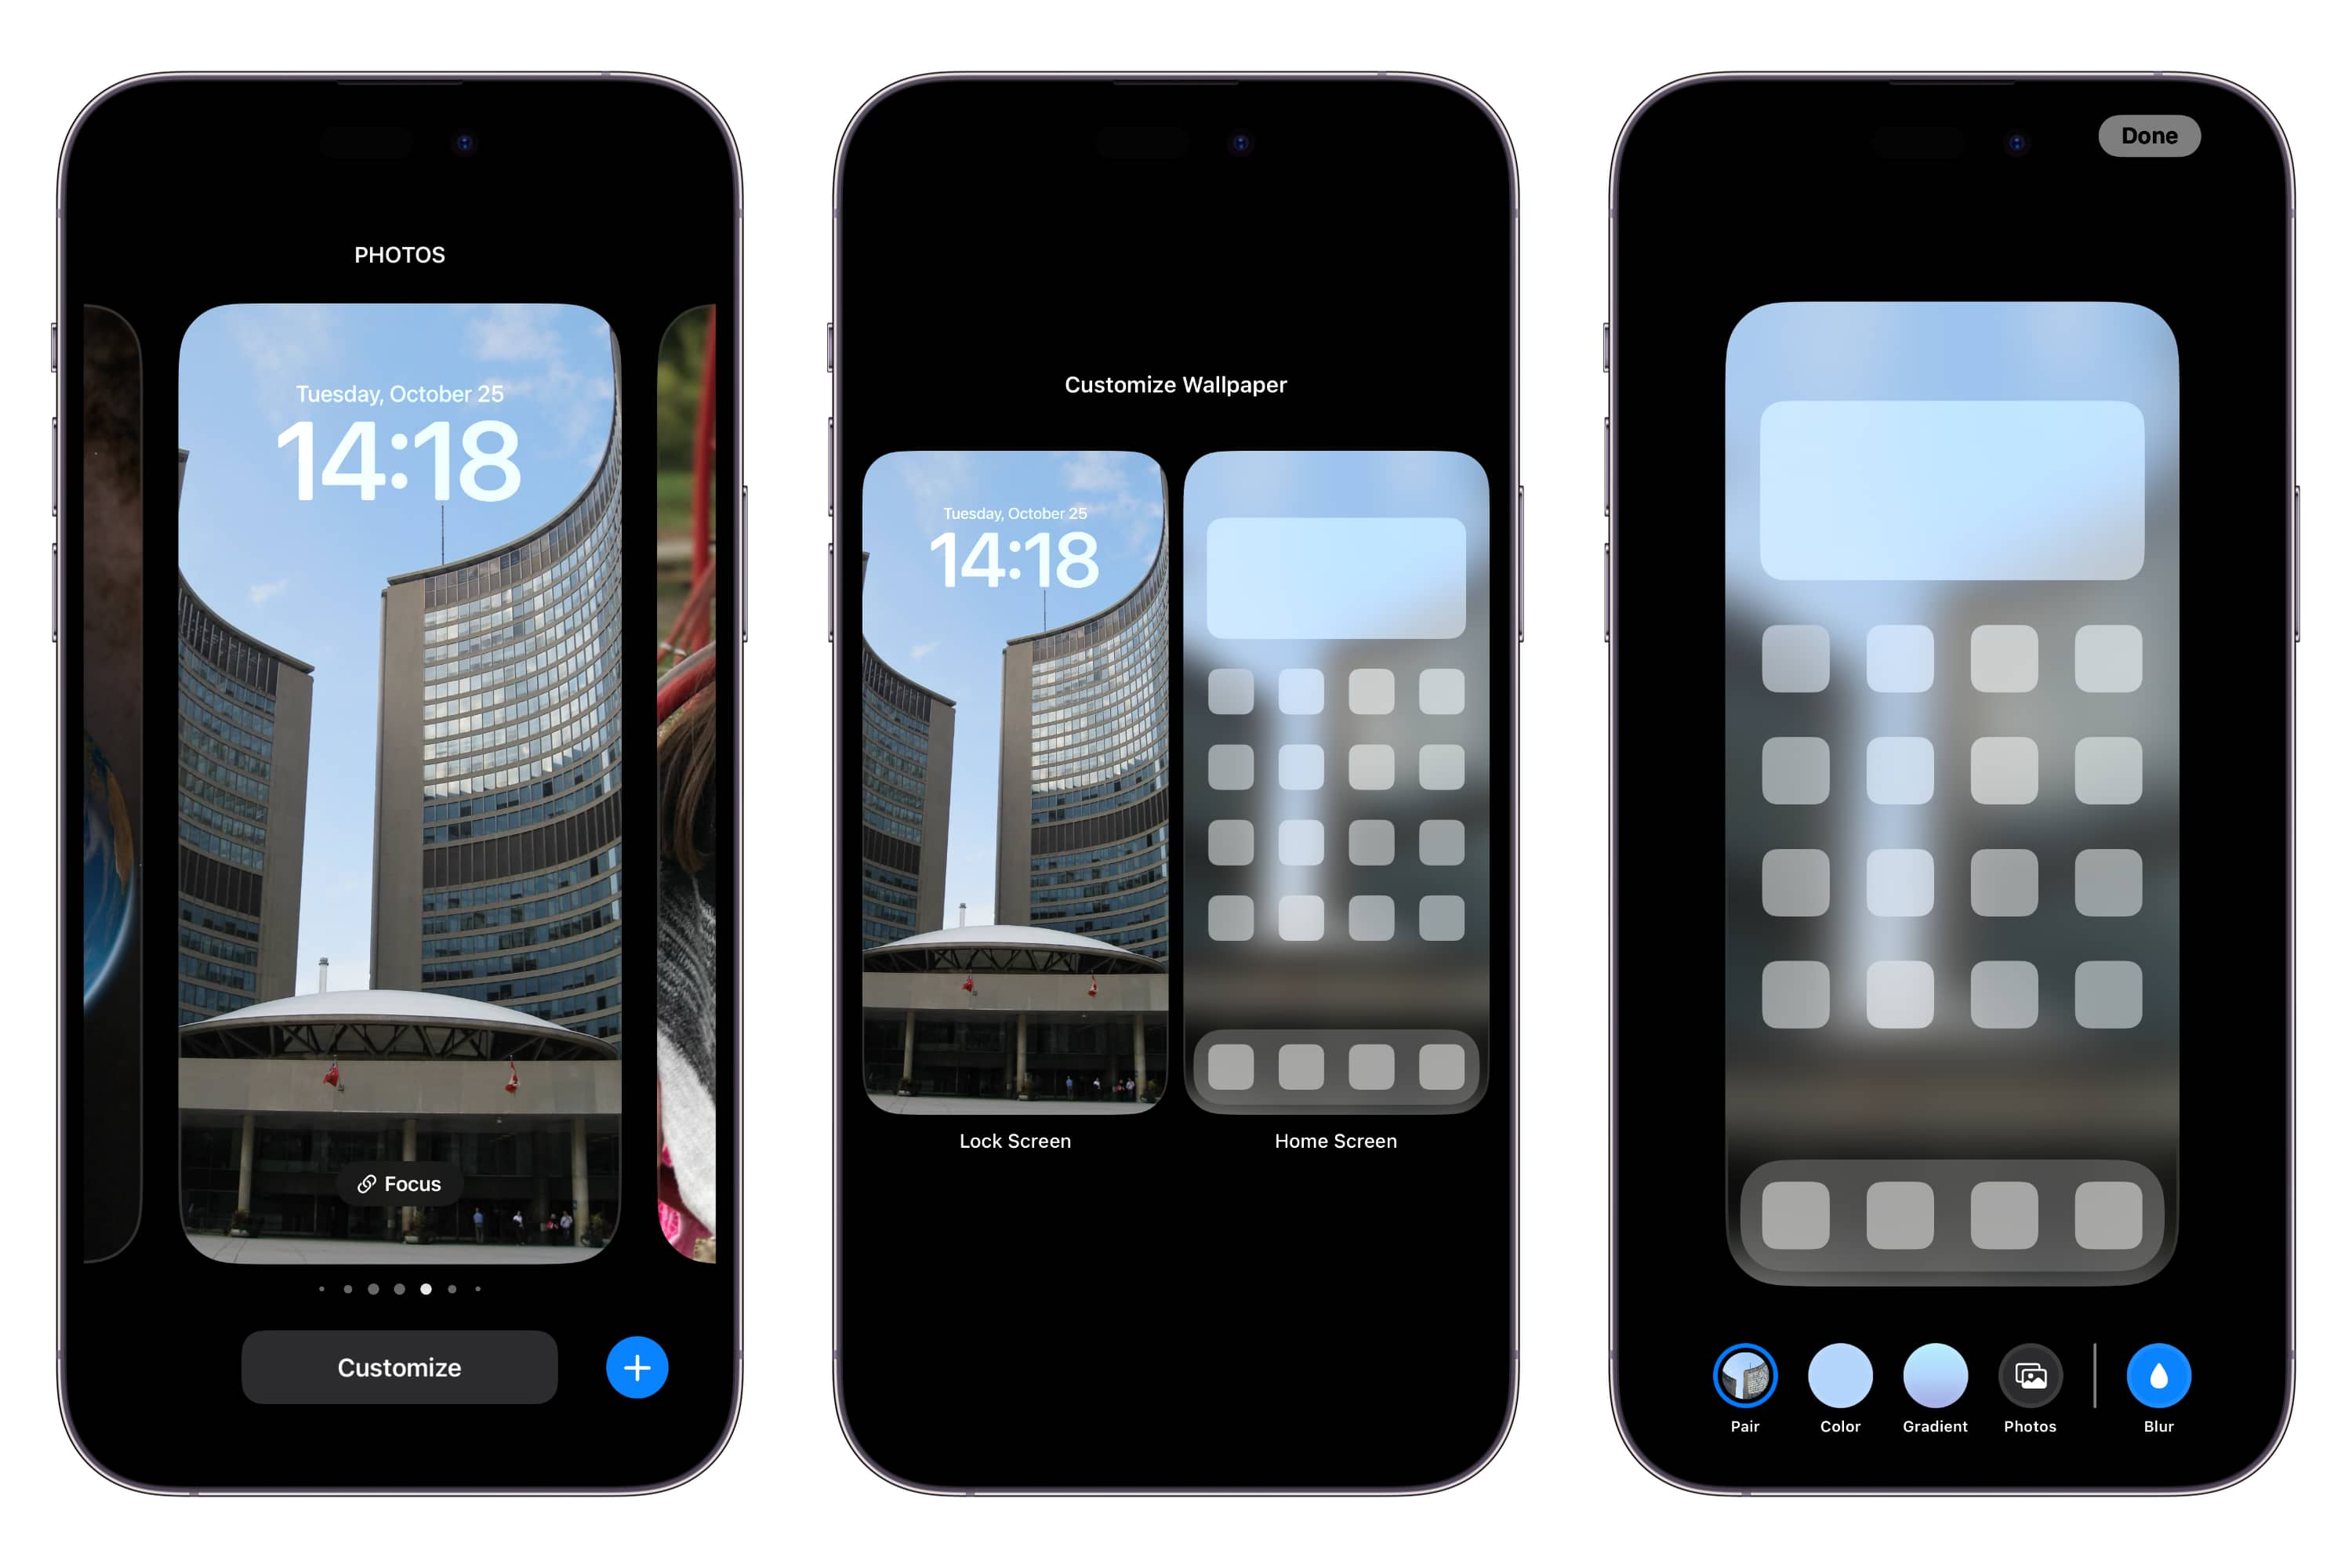 iOS 16: Đón đầu công nghệ với iOS 16, phiên bản mới nhất của hệ điều hành đình đám trên iPhone. Thiết kế vẫn giữ nguyên đẳng cấp và tính năng ưu việt được nâng cấp đáng kể. Khám phá ngay hình ảnh liên quan để trải nghiệm thú vị với iOS 16 nhé!